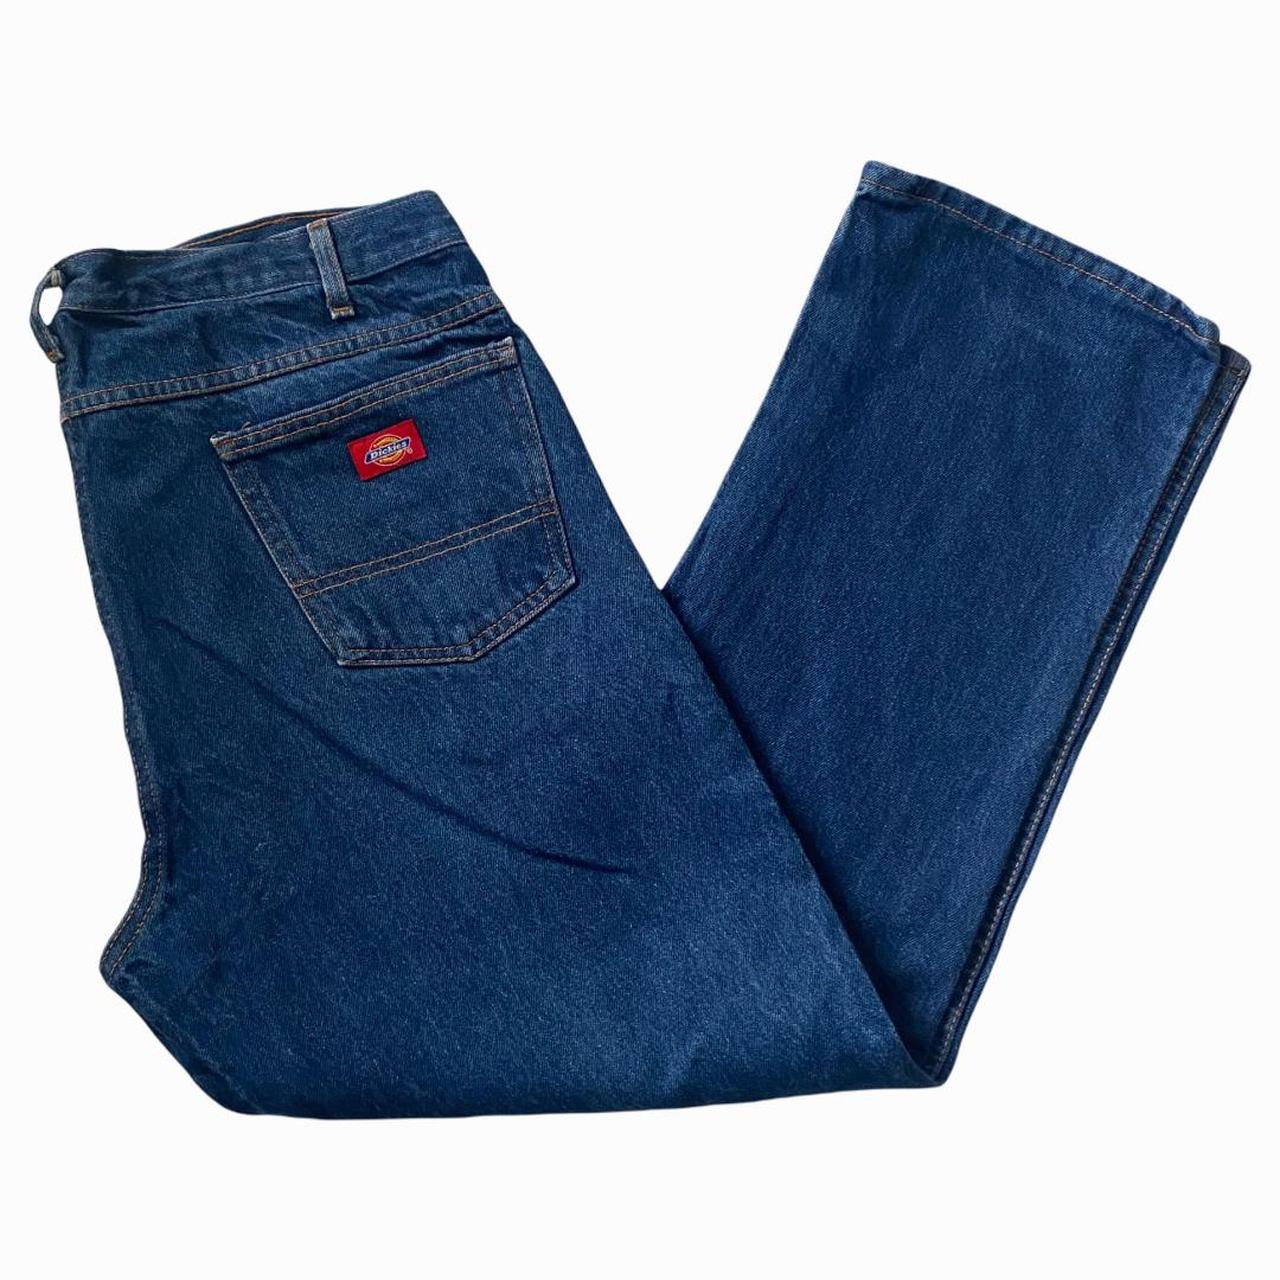 Vintage dickies Blue Denim jeans utility Workwear... - Depop